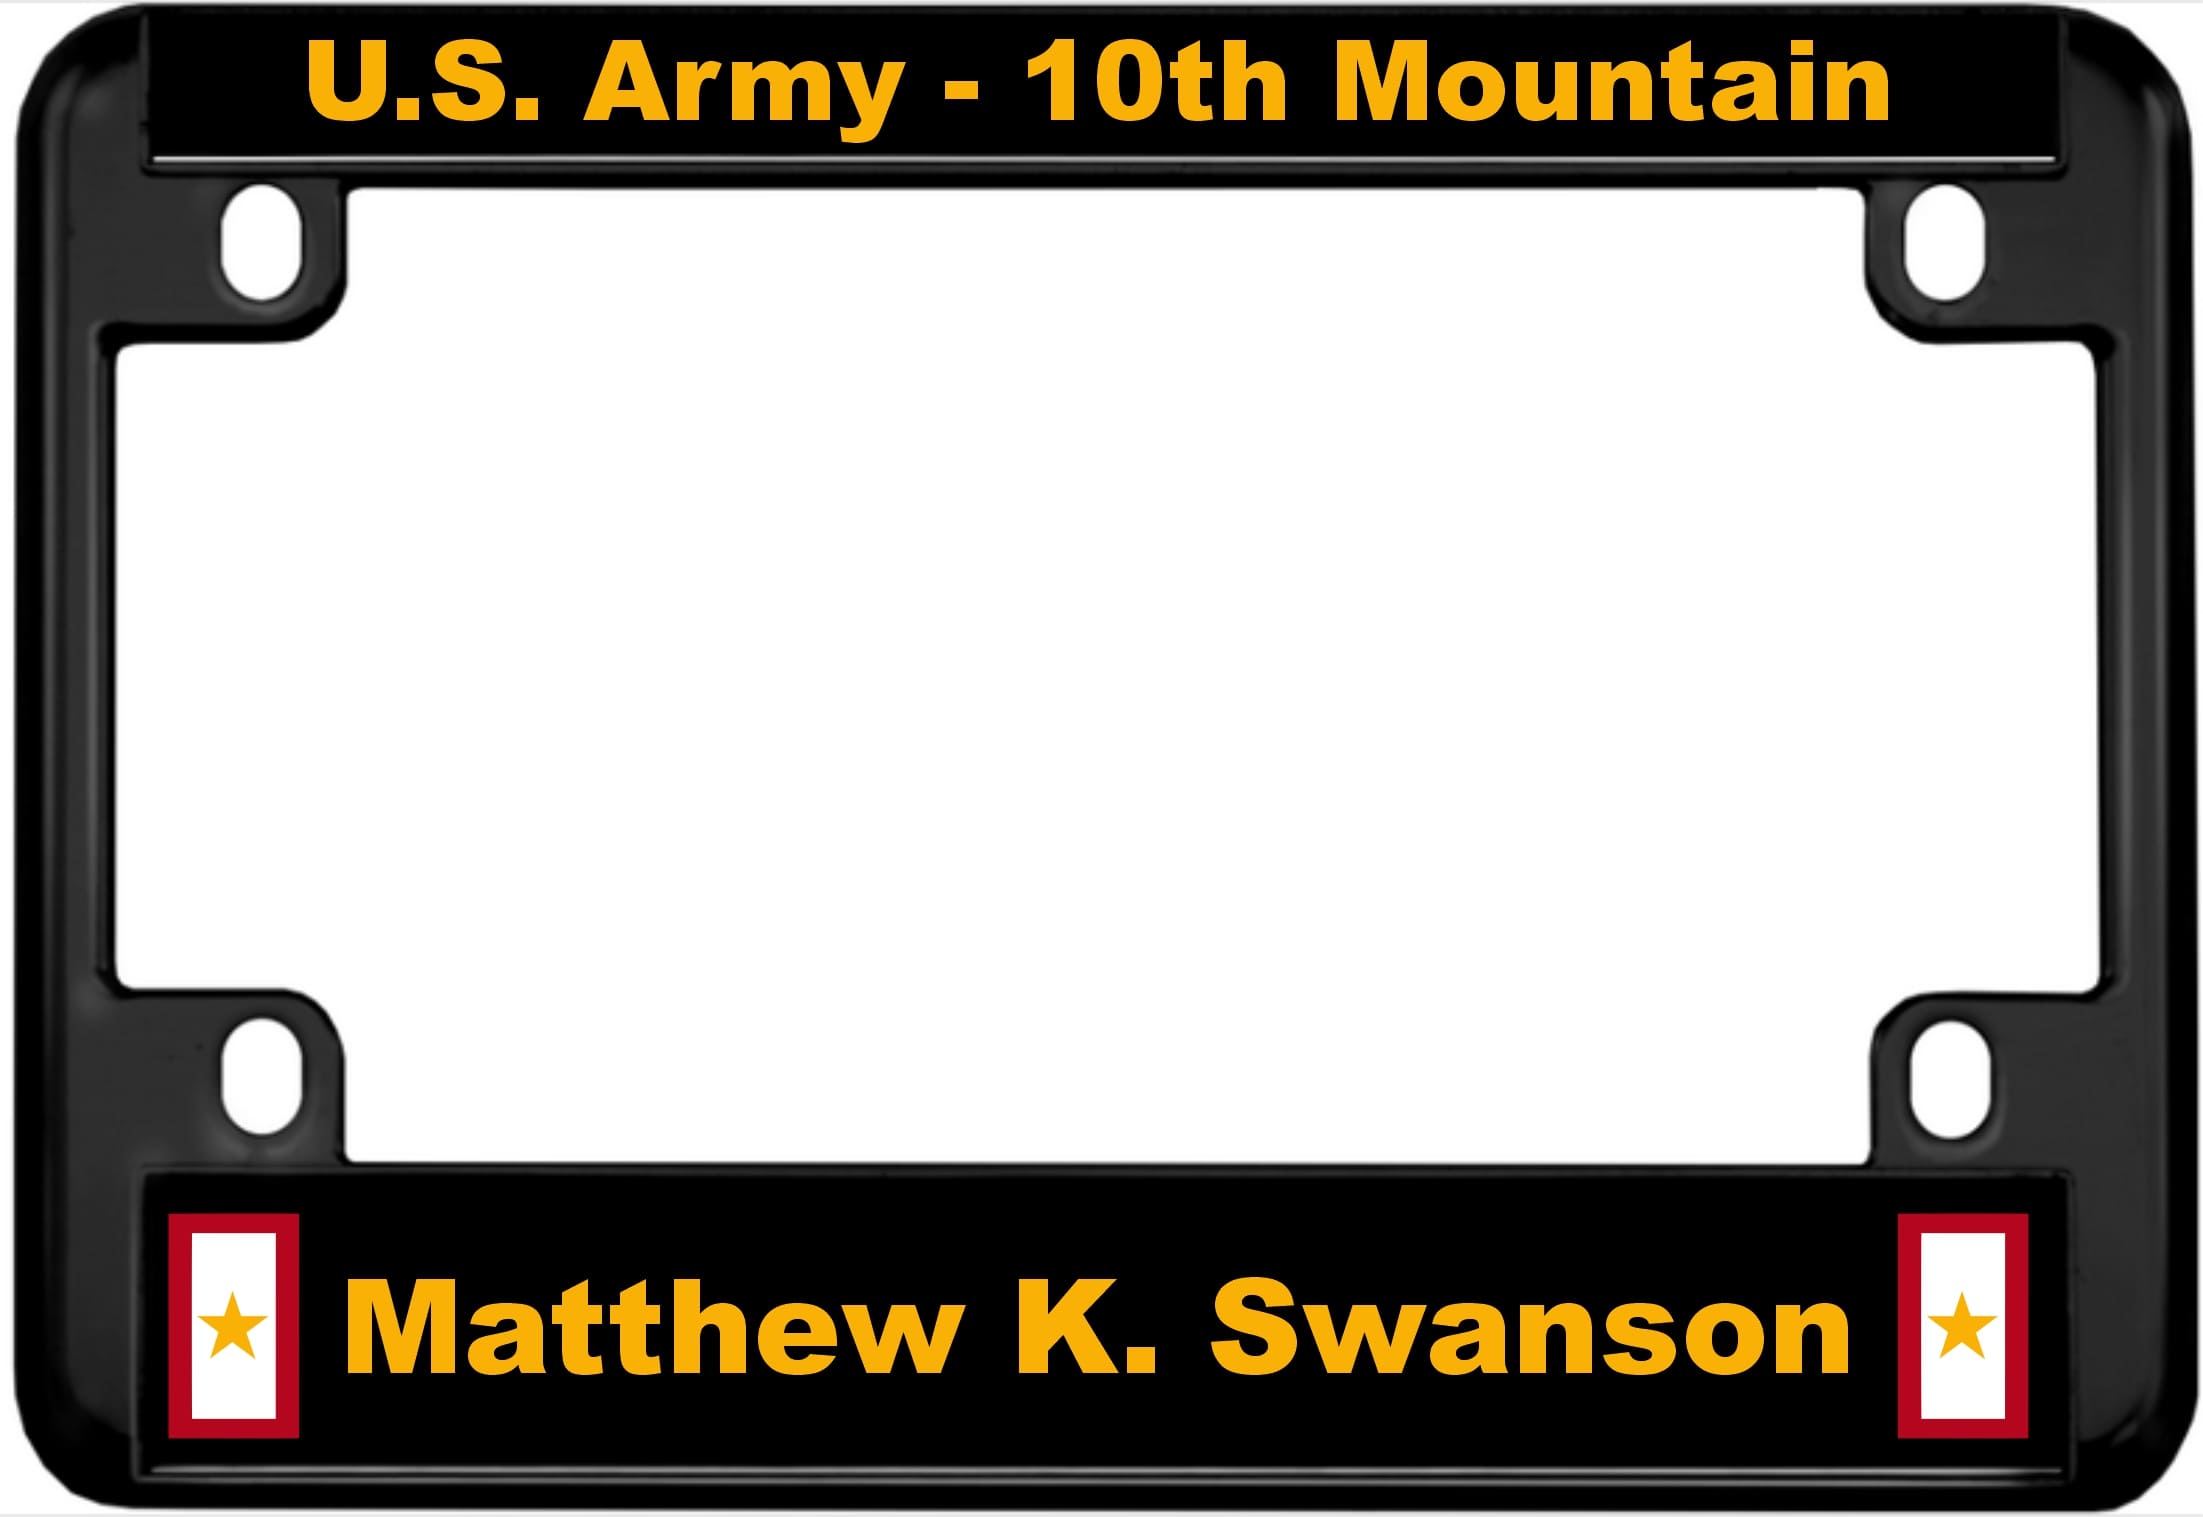 Matthew K. Swanson - Motorcycle Metal License Plate Frame - Black